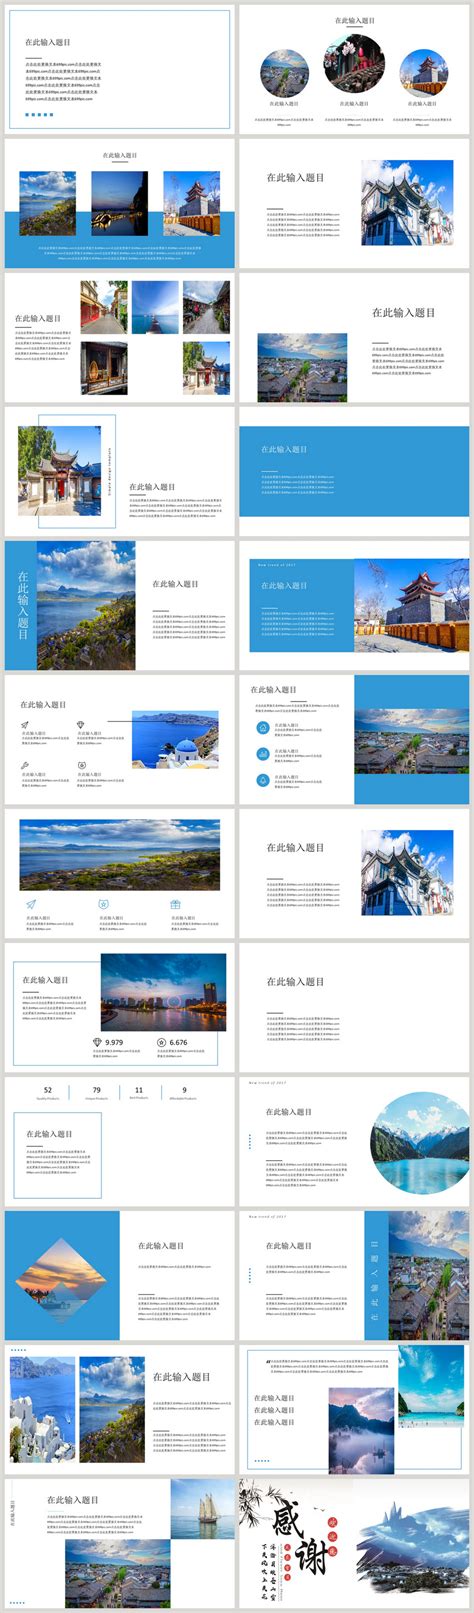 大理旅行攻略蓝色摄影图手机海报海报模板下载-千库网